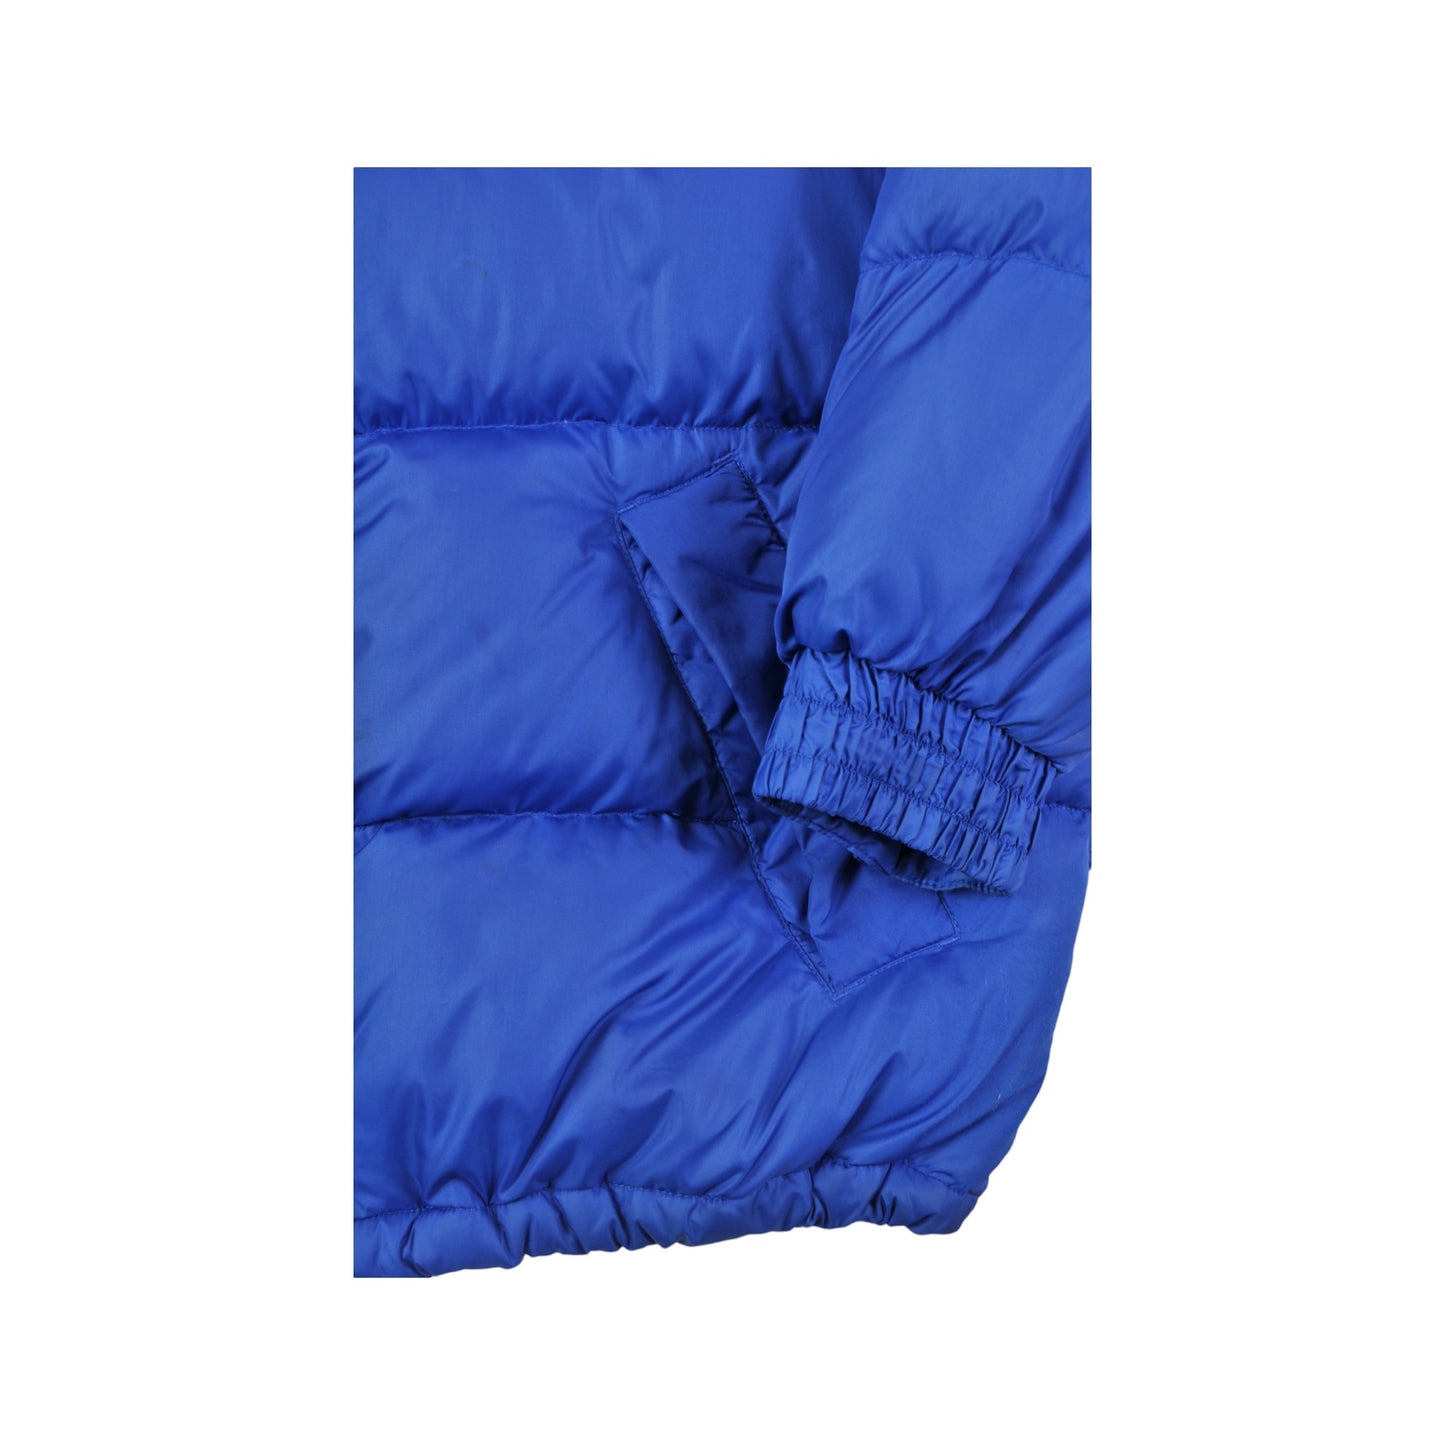 Vintage Ski Puffer Jacket Blue Ladies Small